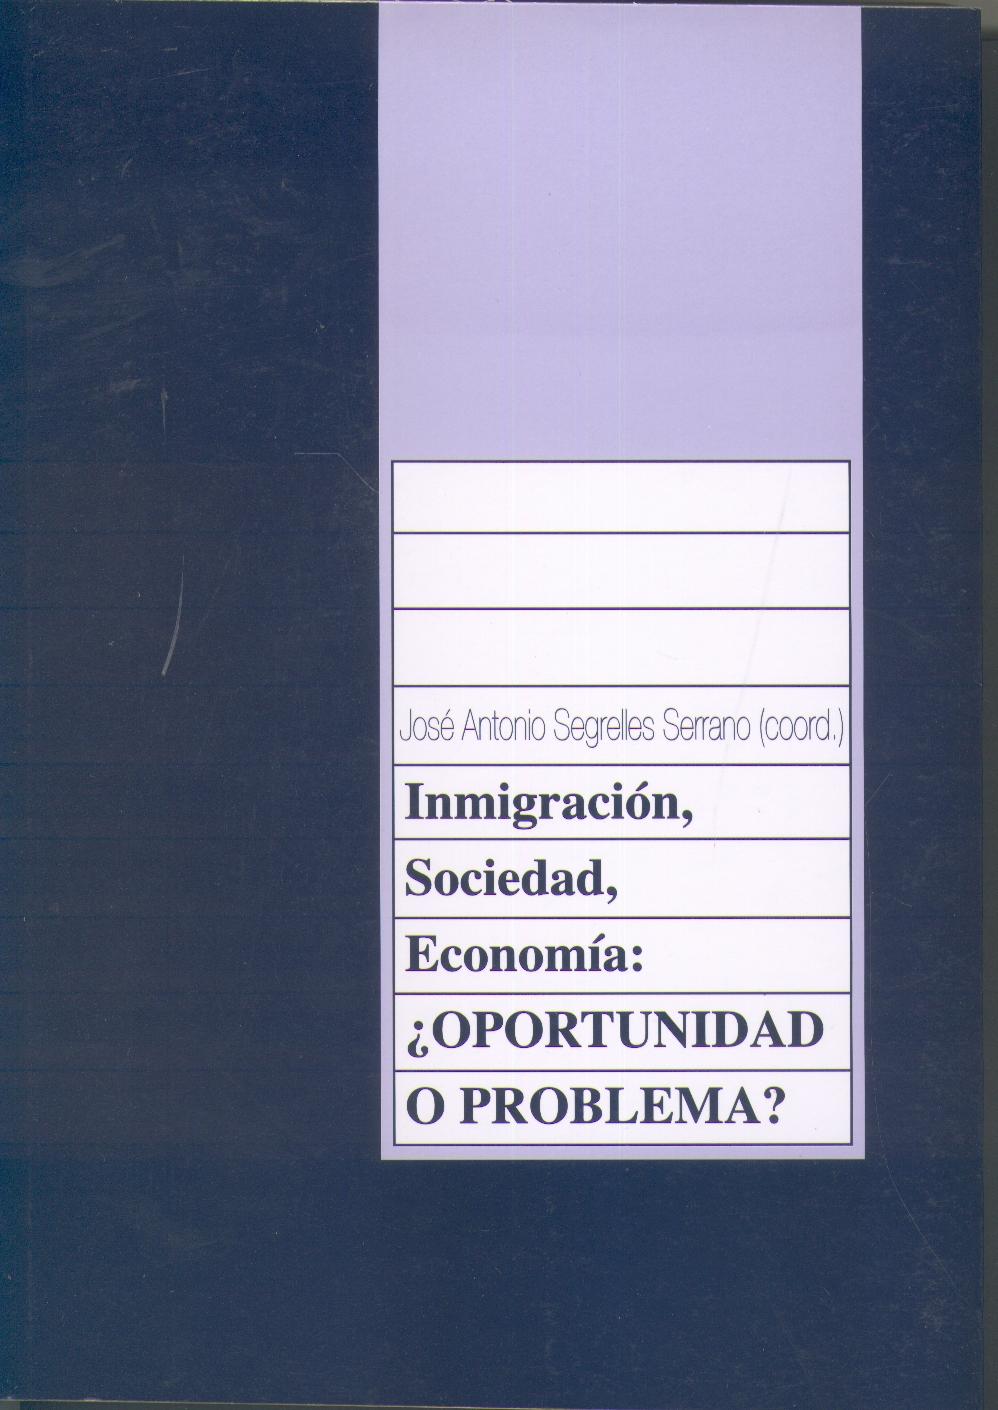 Inmigracion, Sociedad, Economia: ¿Oportunidad o Problema?